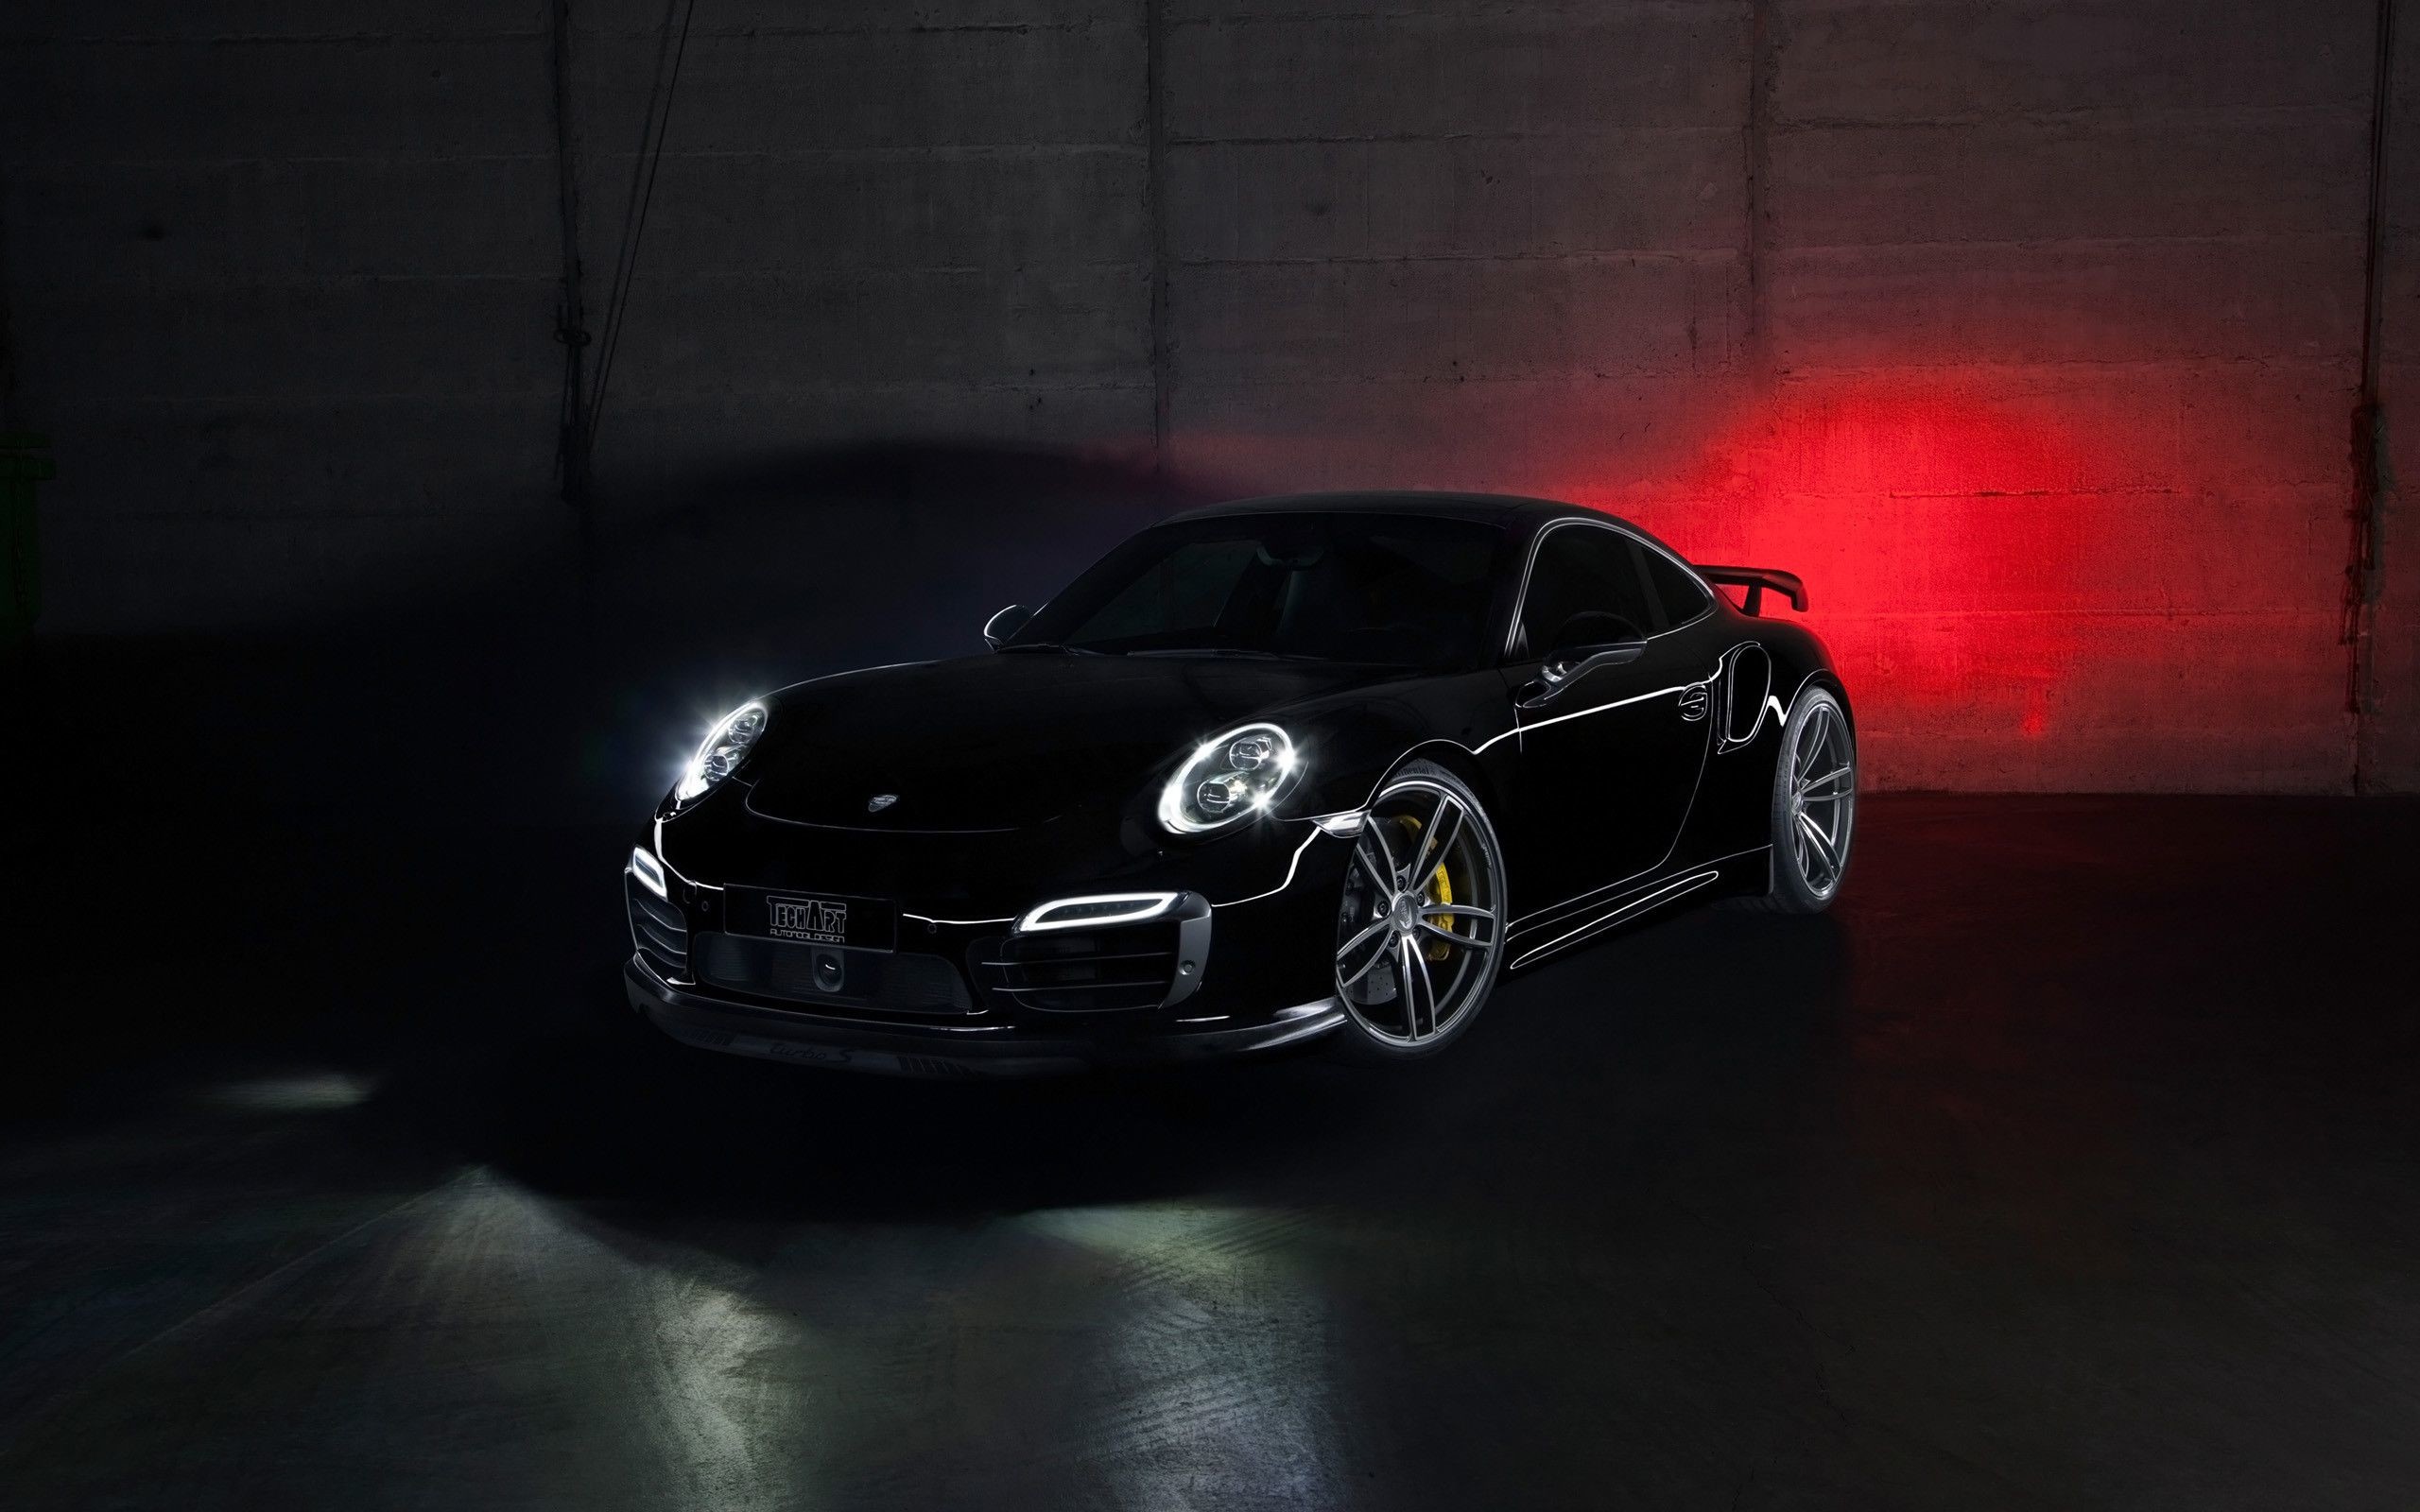 2560x1600 1680x1050 15 Excellent HD Porsche Wallpapers">